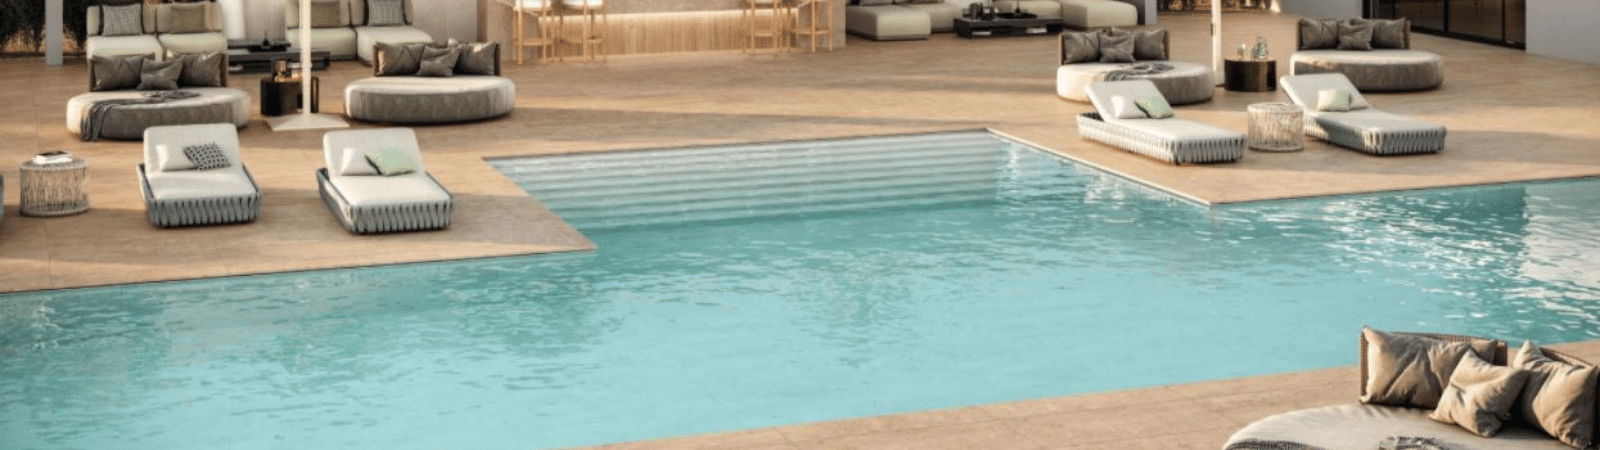 tuintegels rondom zwembad kopen tegels expert